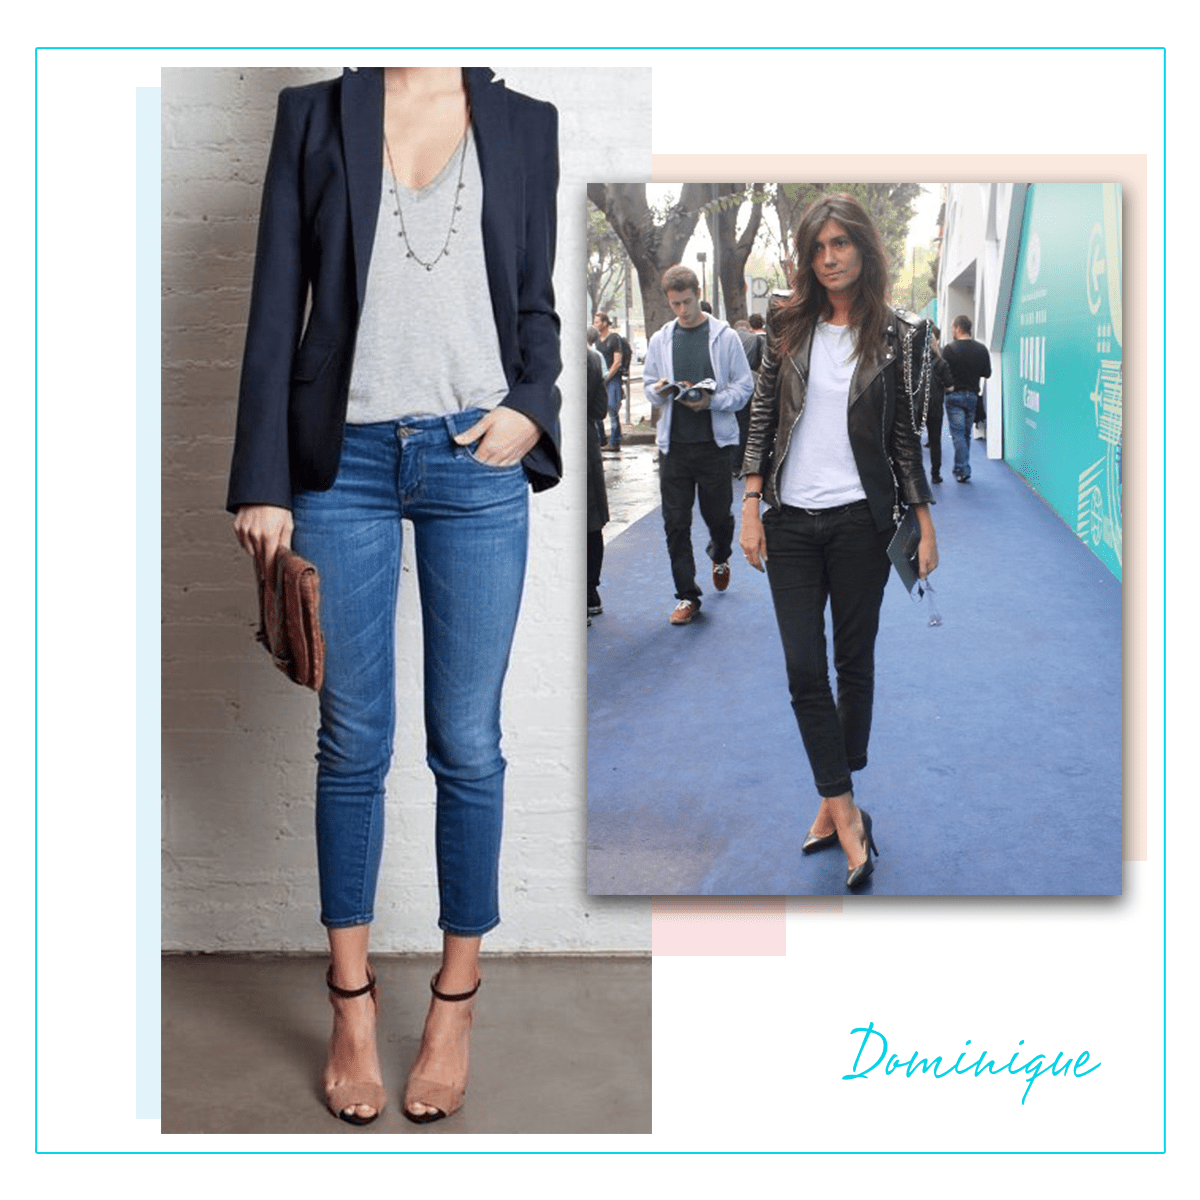 Dominique - calça jeans